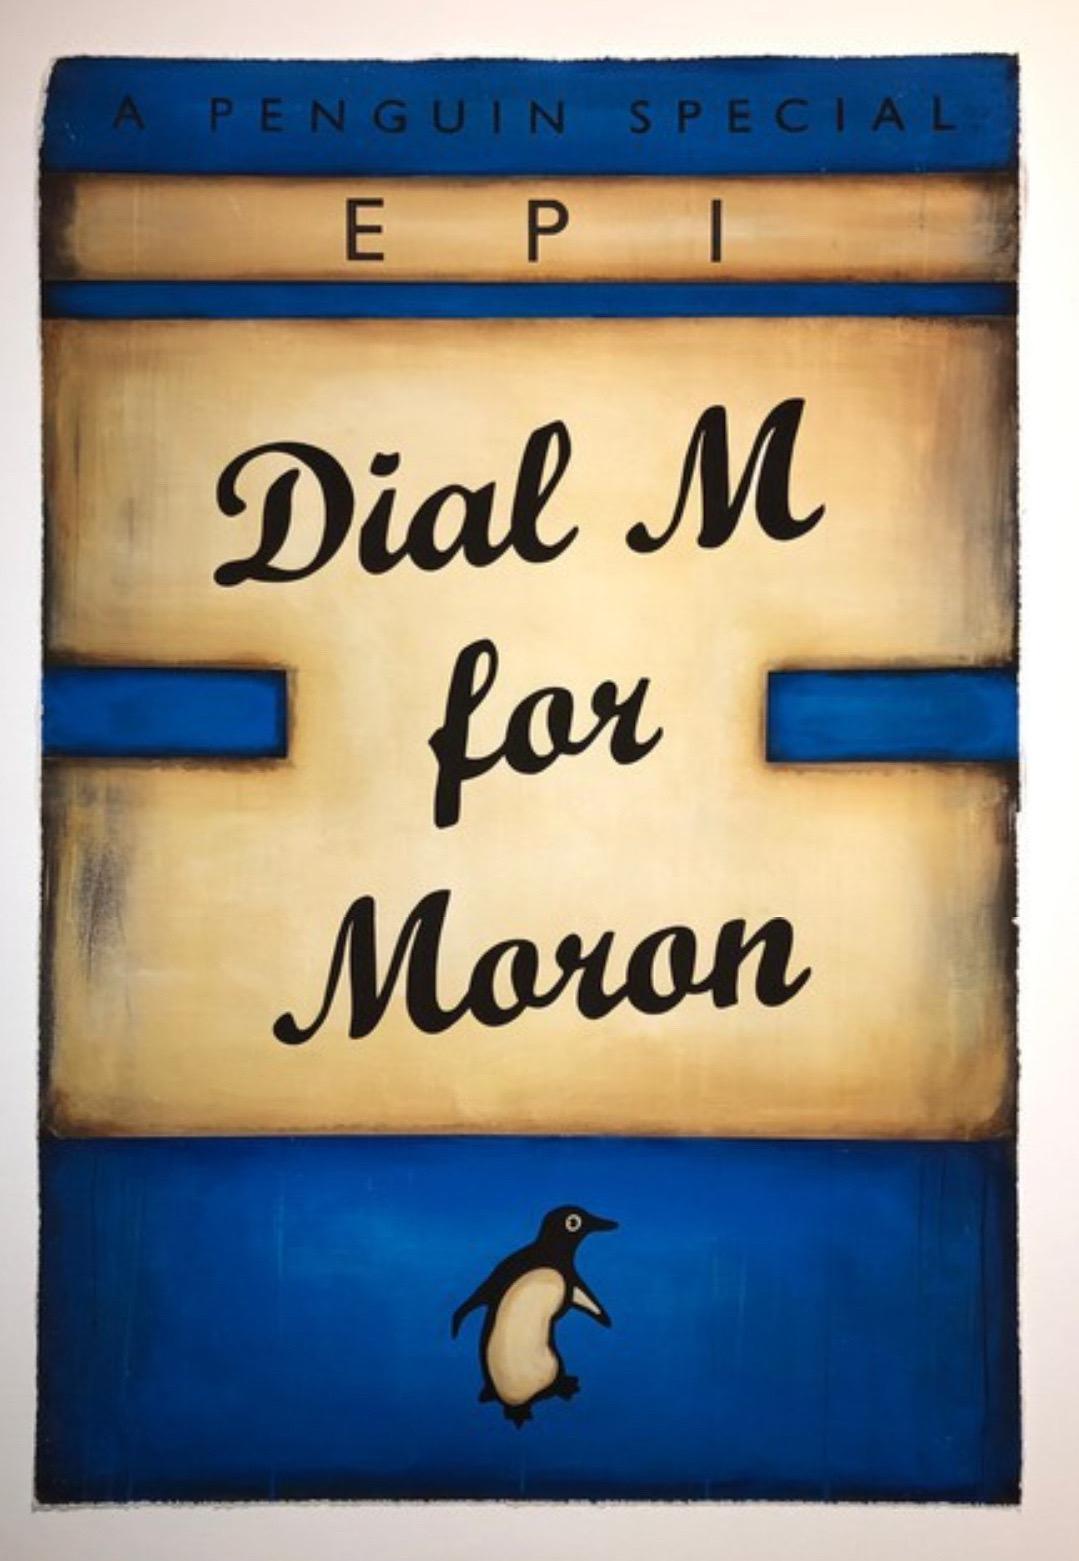 Epi, Dial M For Moron (Blue), 2022 - Print by Epi 